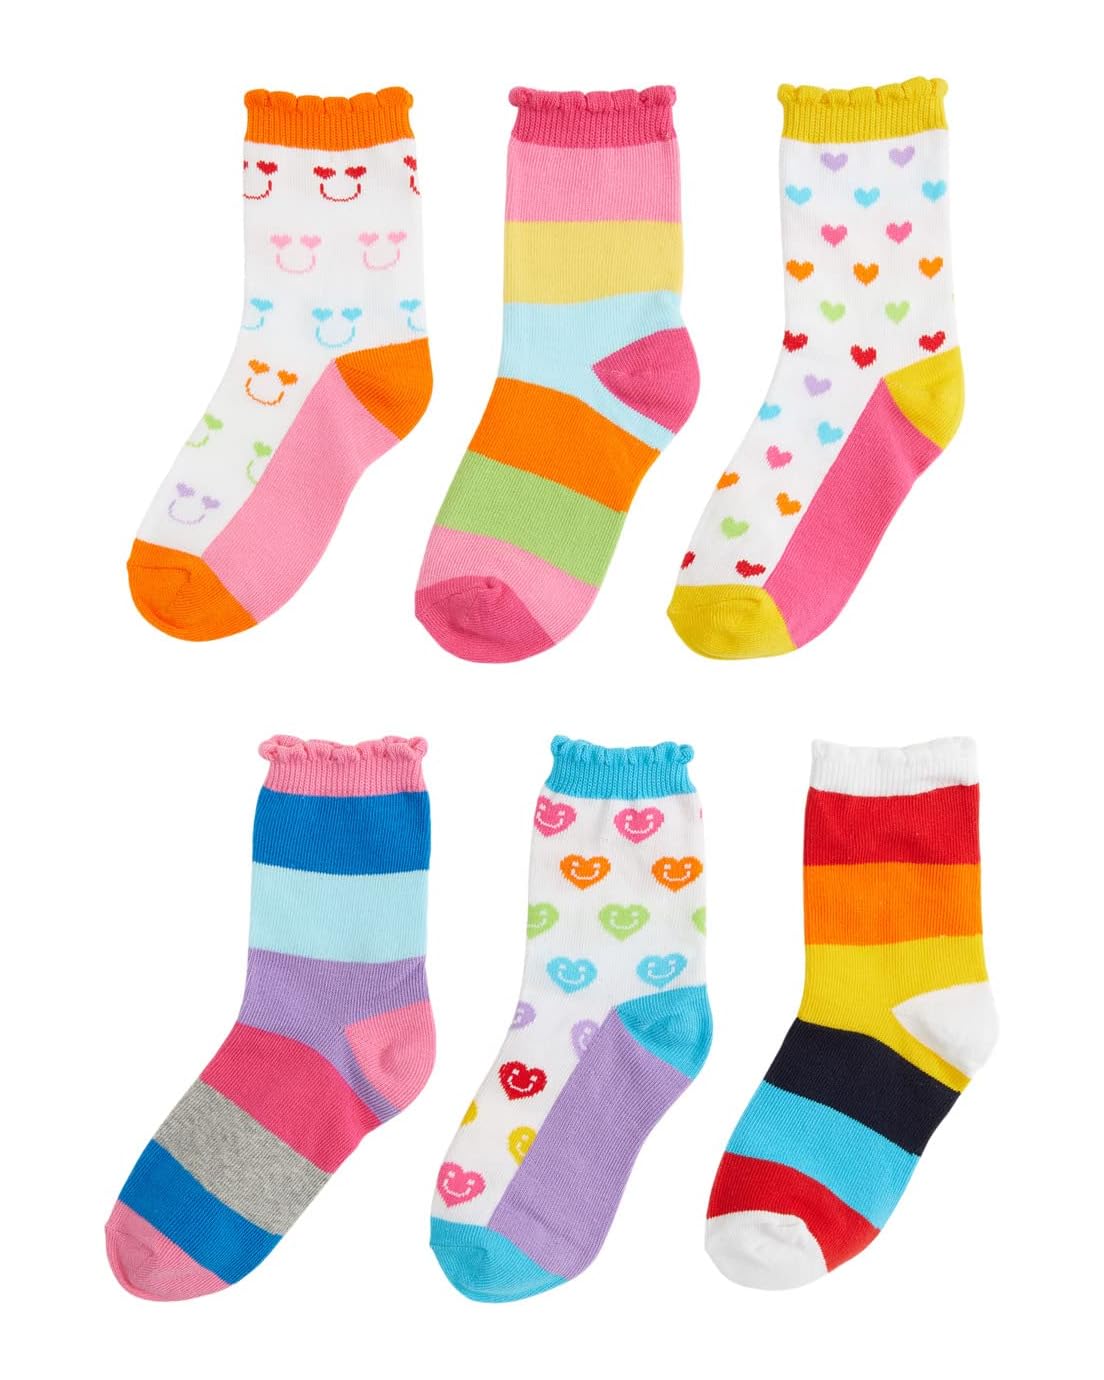 Jefferies Socks Stripes Crew Socks 6-Pair Pack (Infant/Toddler/Little Kid/Big Kid)